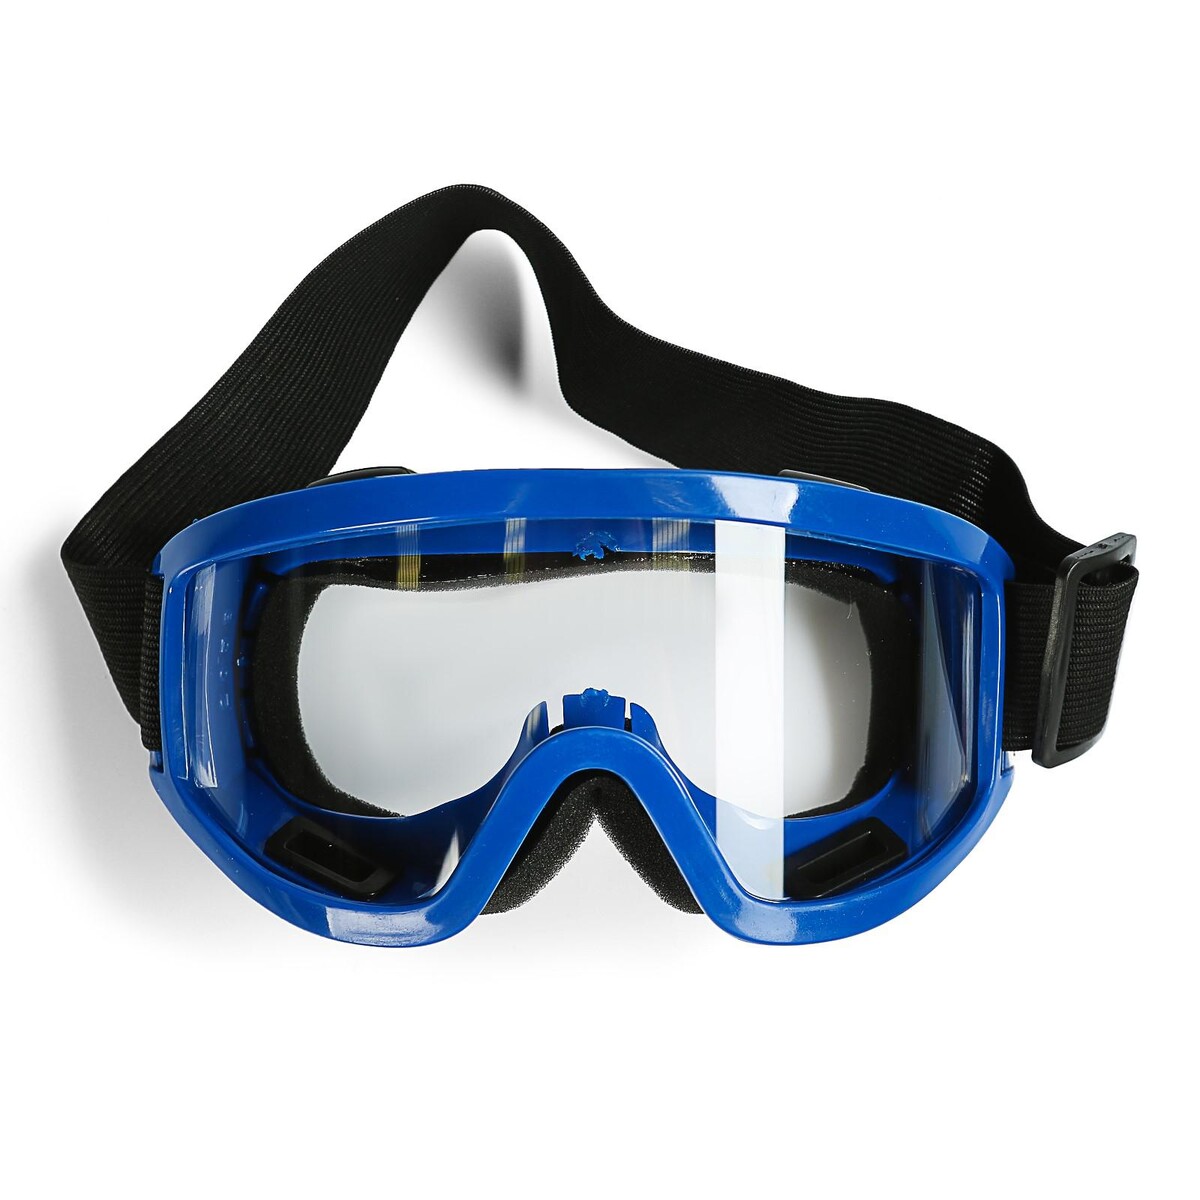 Очки-маска для езды на мототехнике, стекло прозрачное, цвет синий очки маска со съемной защитой носа стекло прозрачное черные